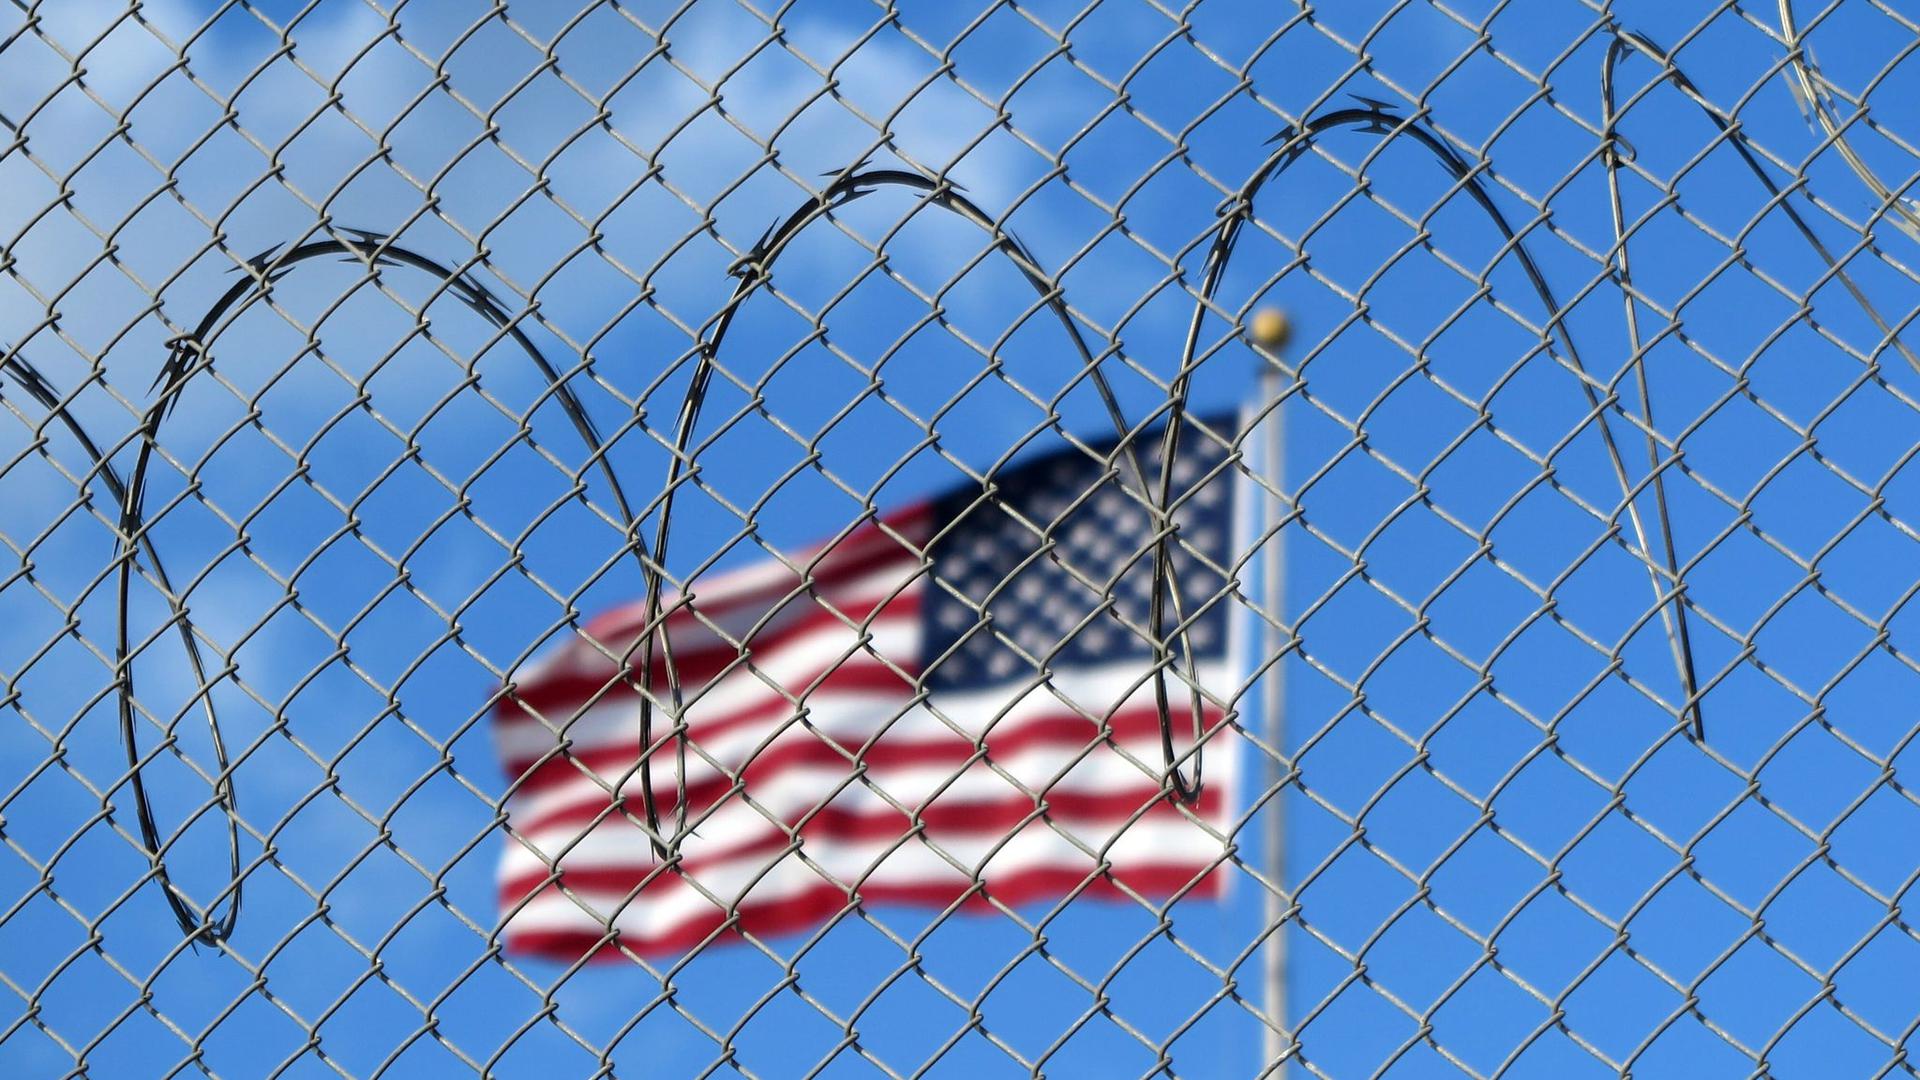 Eine US-Flagge hinter Zaun und Stacheldraht auf dem Marinestützpunkt Guantánamo Bay auf Kuba. Hier betreiben die USA seit mehr als 21 Jahren ein umstrittenes Gefangenenlager.